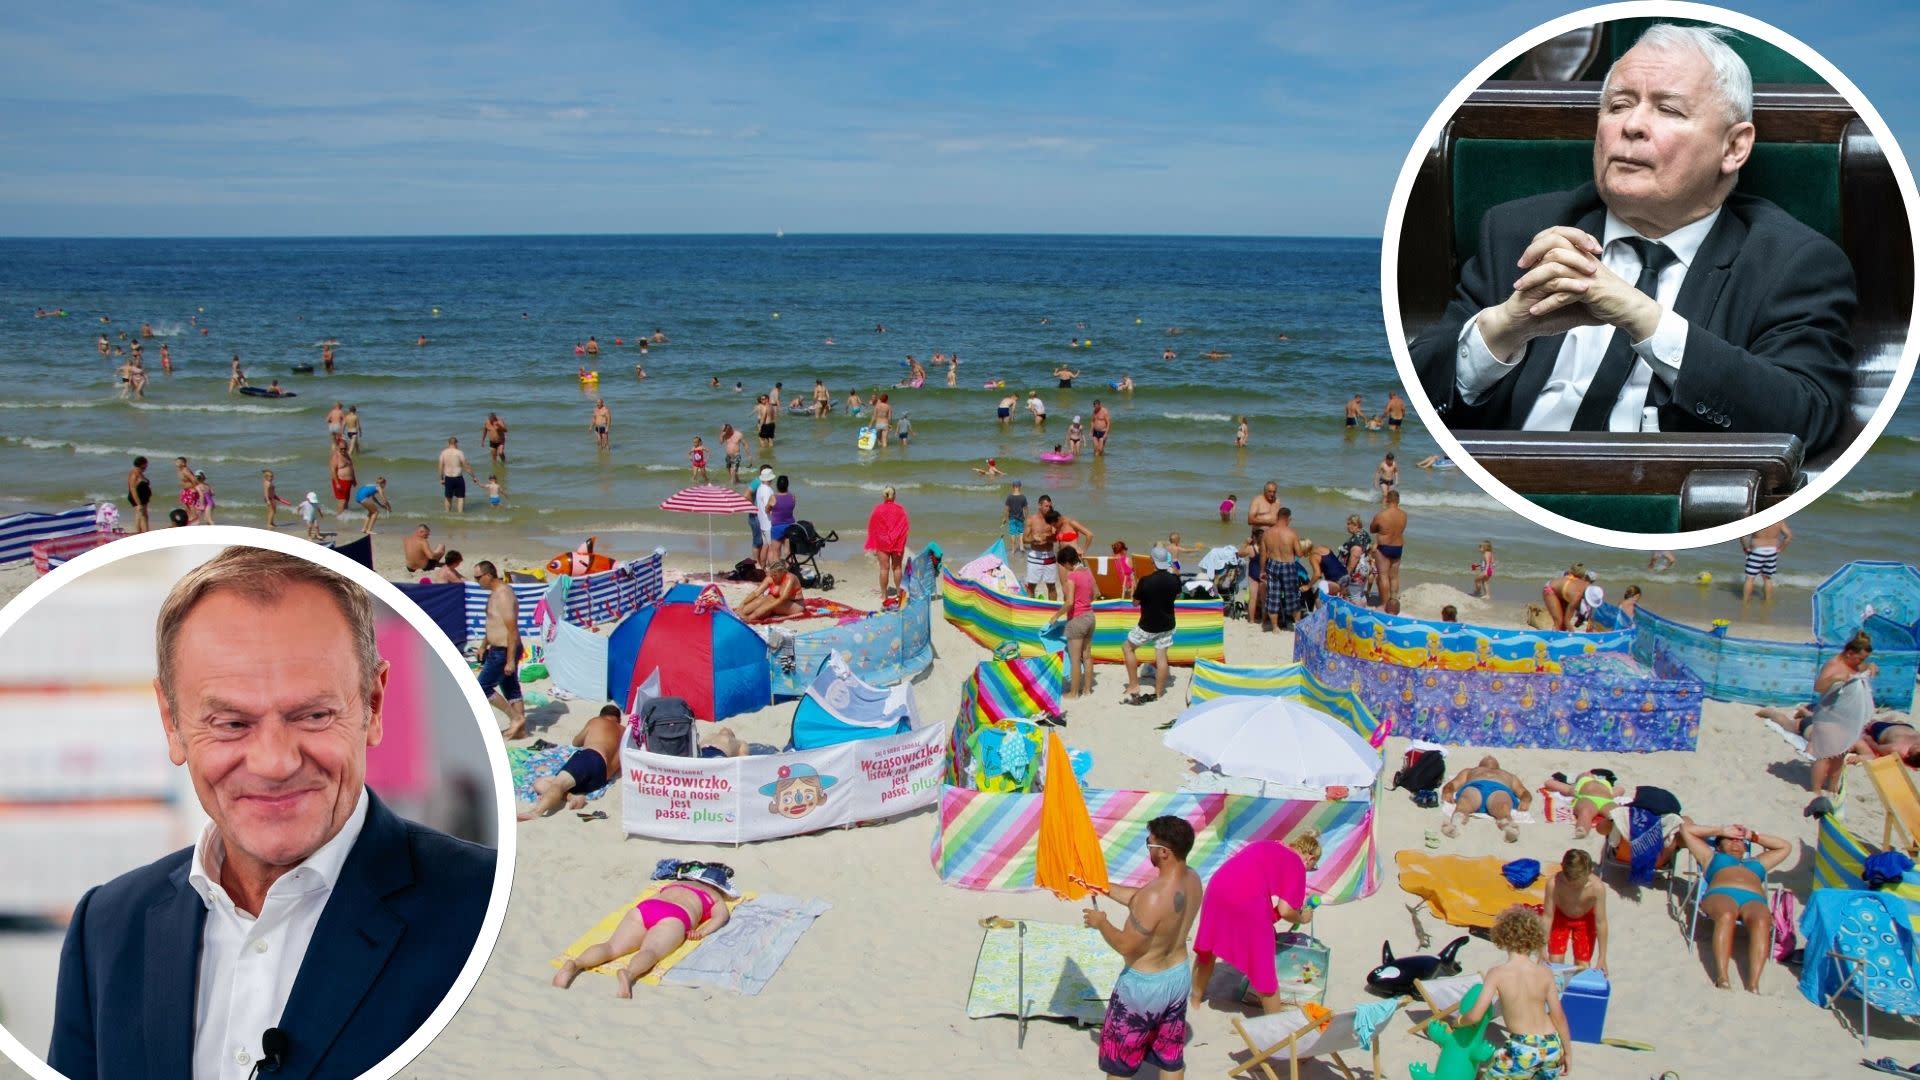 Polacy odpoczywali na plaży we Władysławowie, nagle "przyszedł" Donald Tusk i Jarosław Kaczyński